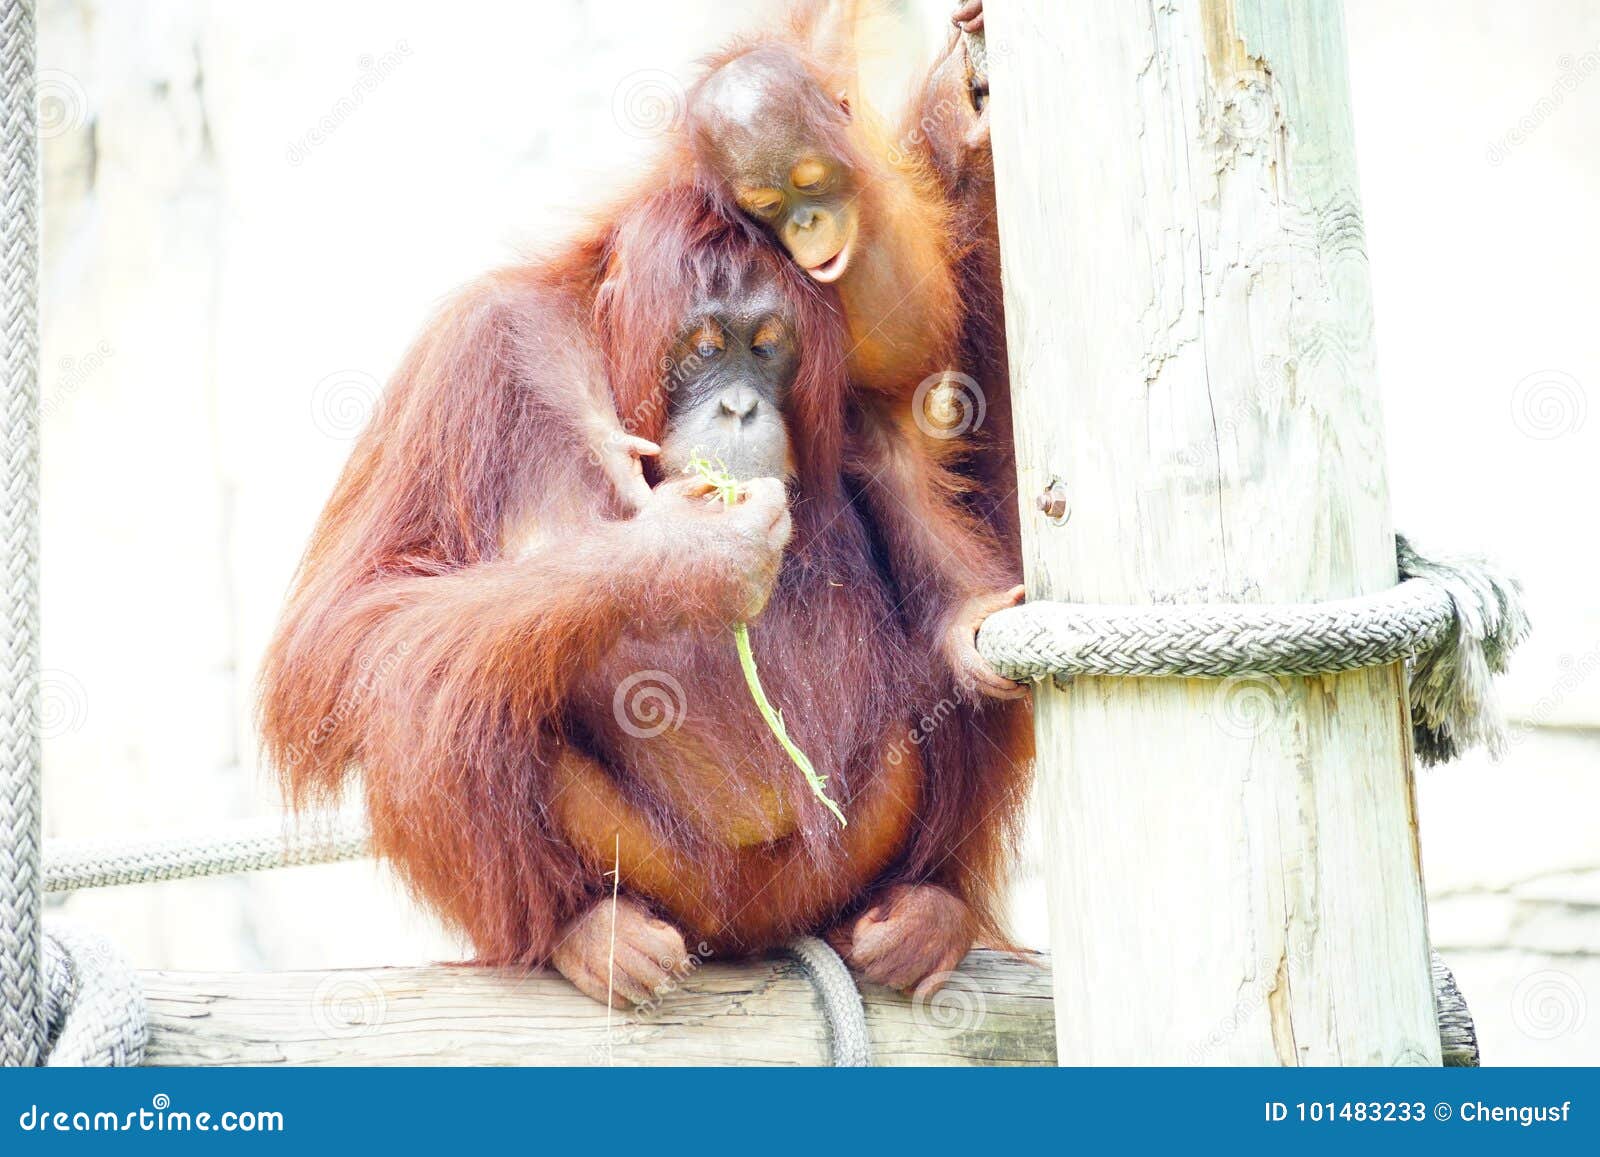 Download Mammal Orangutan Primate Ape Stock Image - Image of jungle, gestures: 101483233